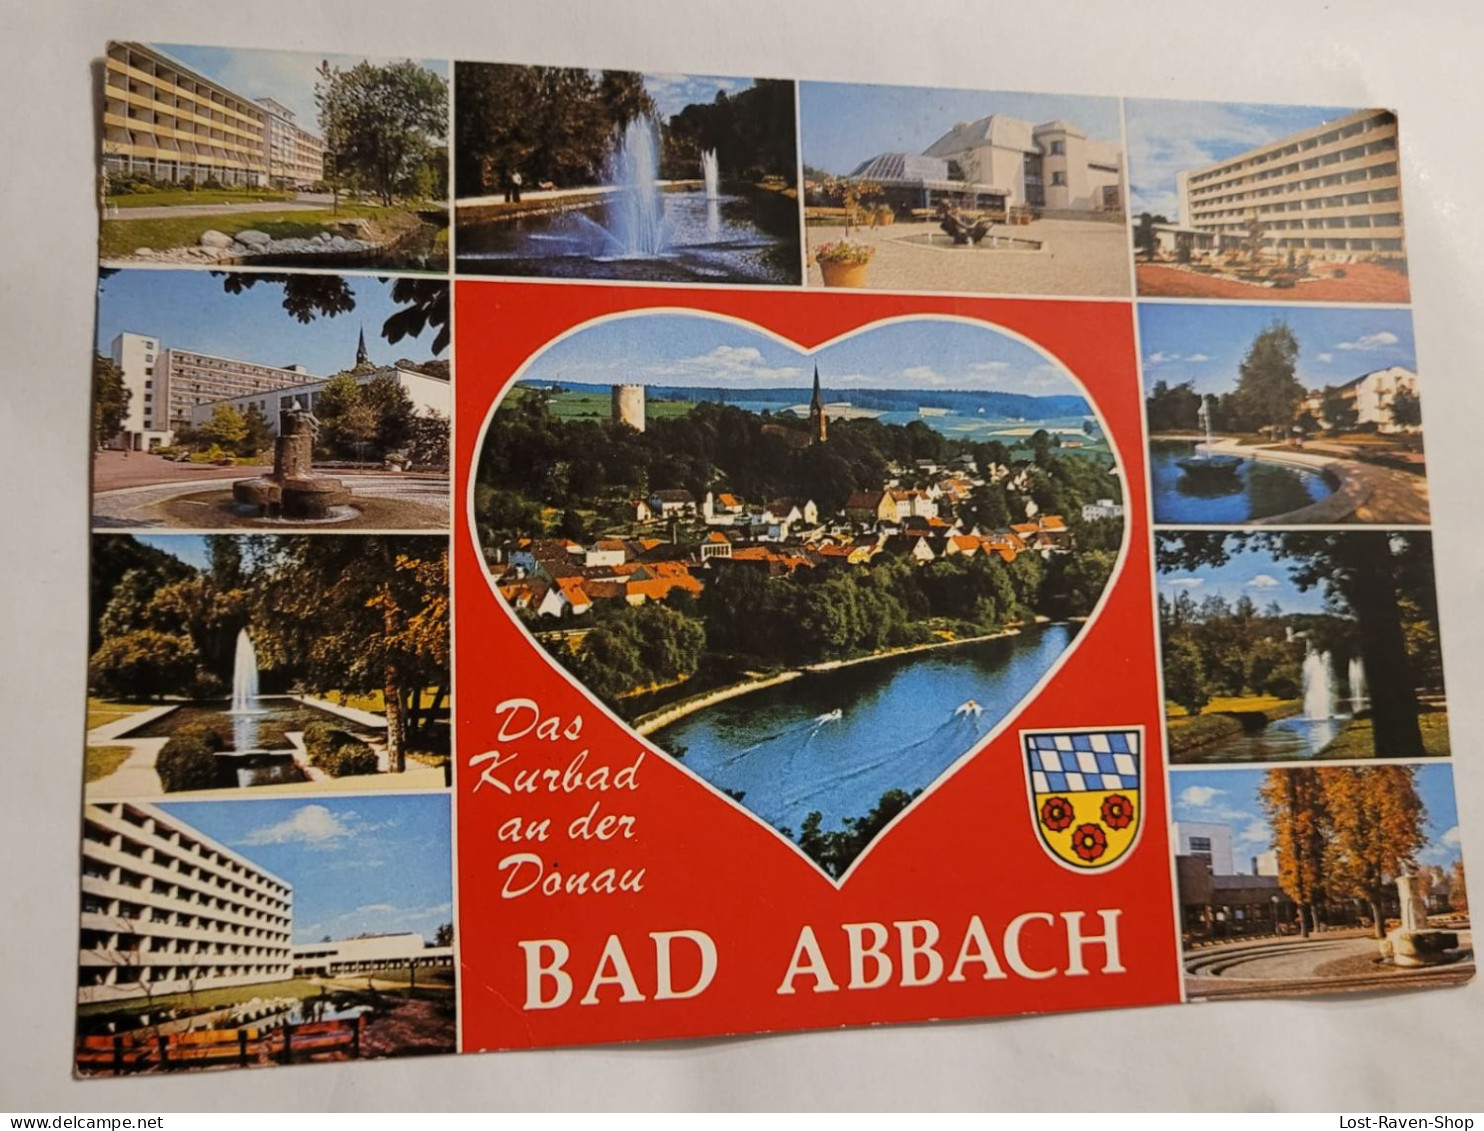 Bad Abbach - Bad Abbach